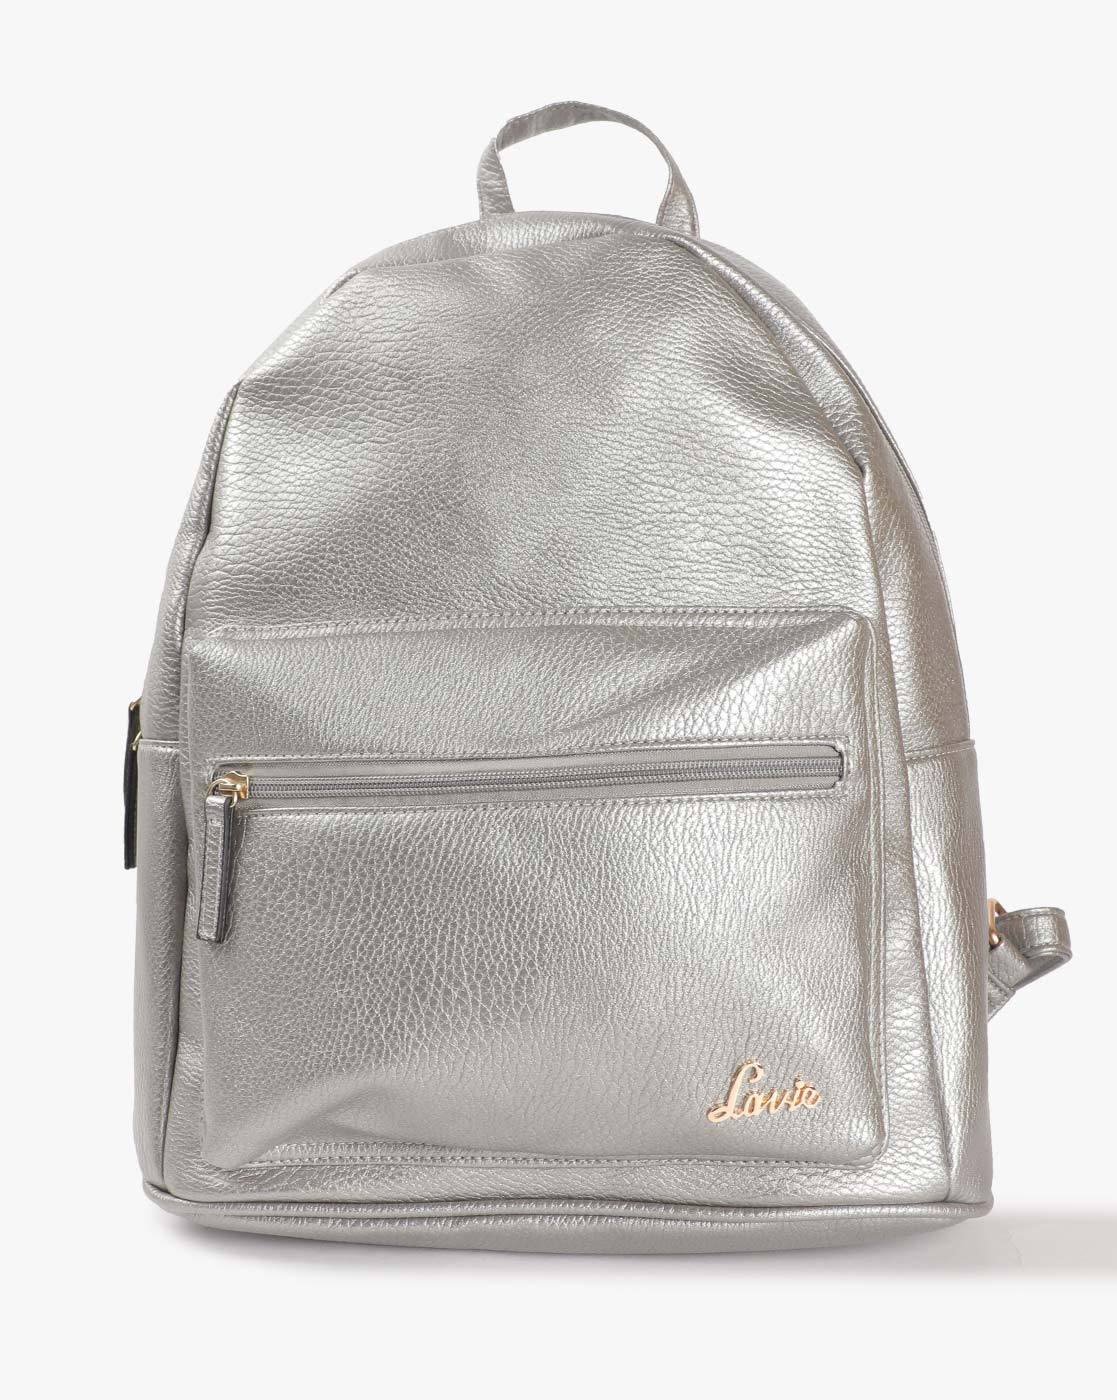 lavie backpacks online